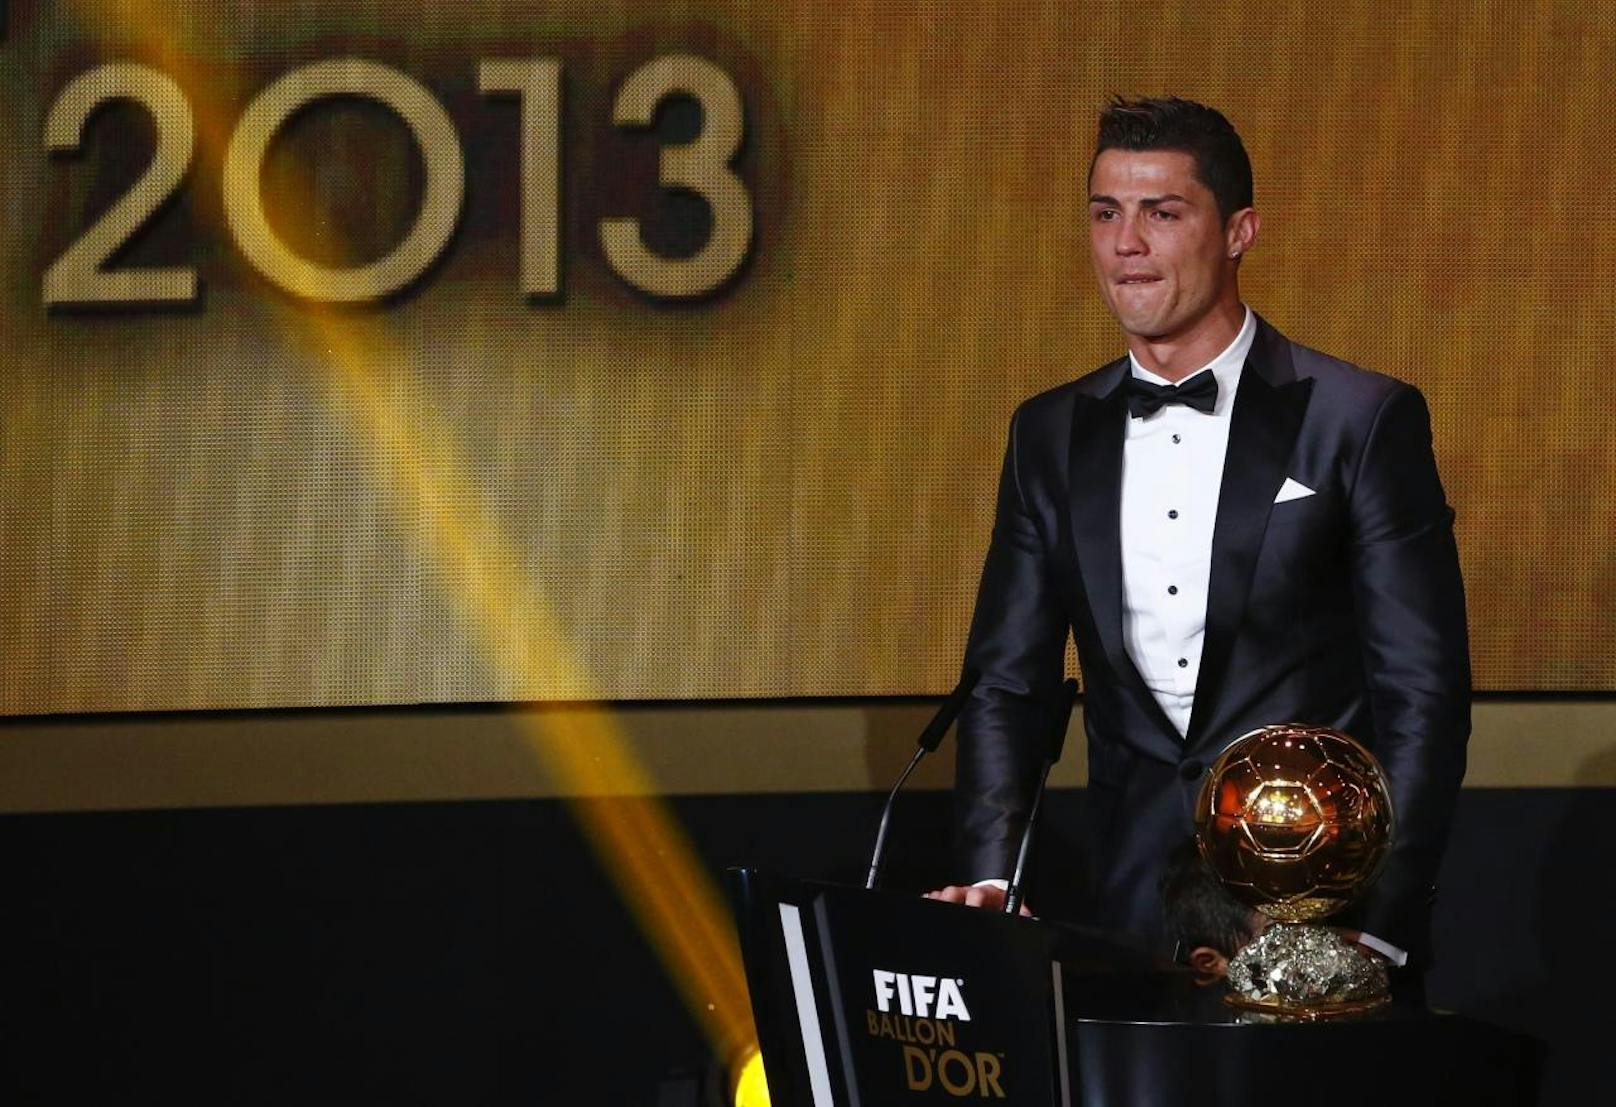 Fünf Jahre nach dem erstmaligen Gewinn ist Ronaldo 2013 wieder Weltfußballer. Als er den Bllon d'Or entgegennimmt, kann er die Tränen vor lauter Emotionen nicht zurückhalten.